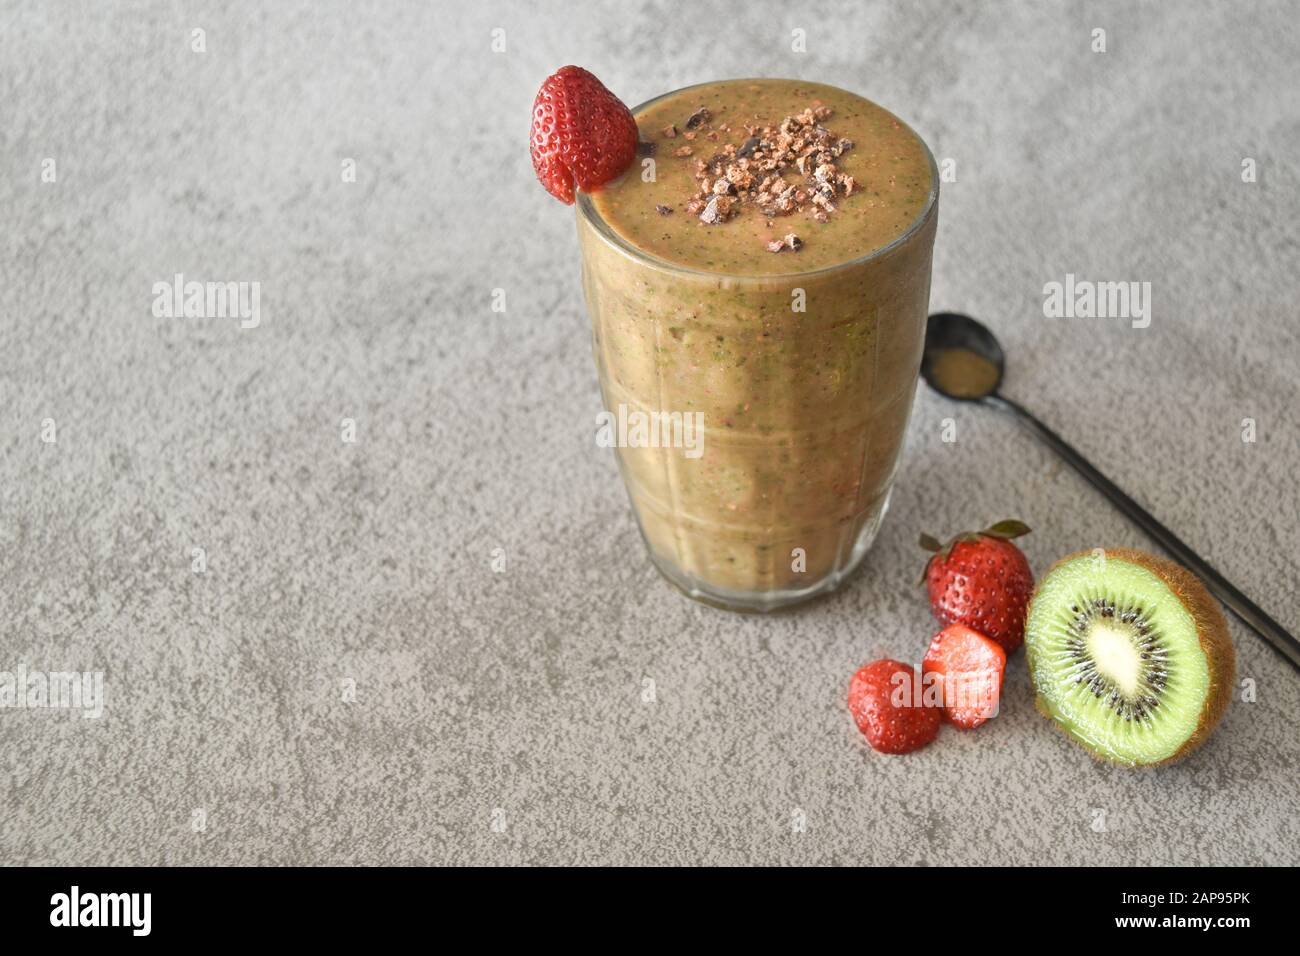 Erdbeer-Kiwi-Schokoladen-Smoothie in einem Maurer-Glas, gesunde organische Ernährung Essen und trinken, Gewichtsverlust Ernährung veganer vegetarischer Lebensstil heilen Stockfoto